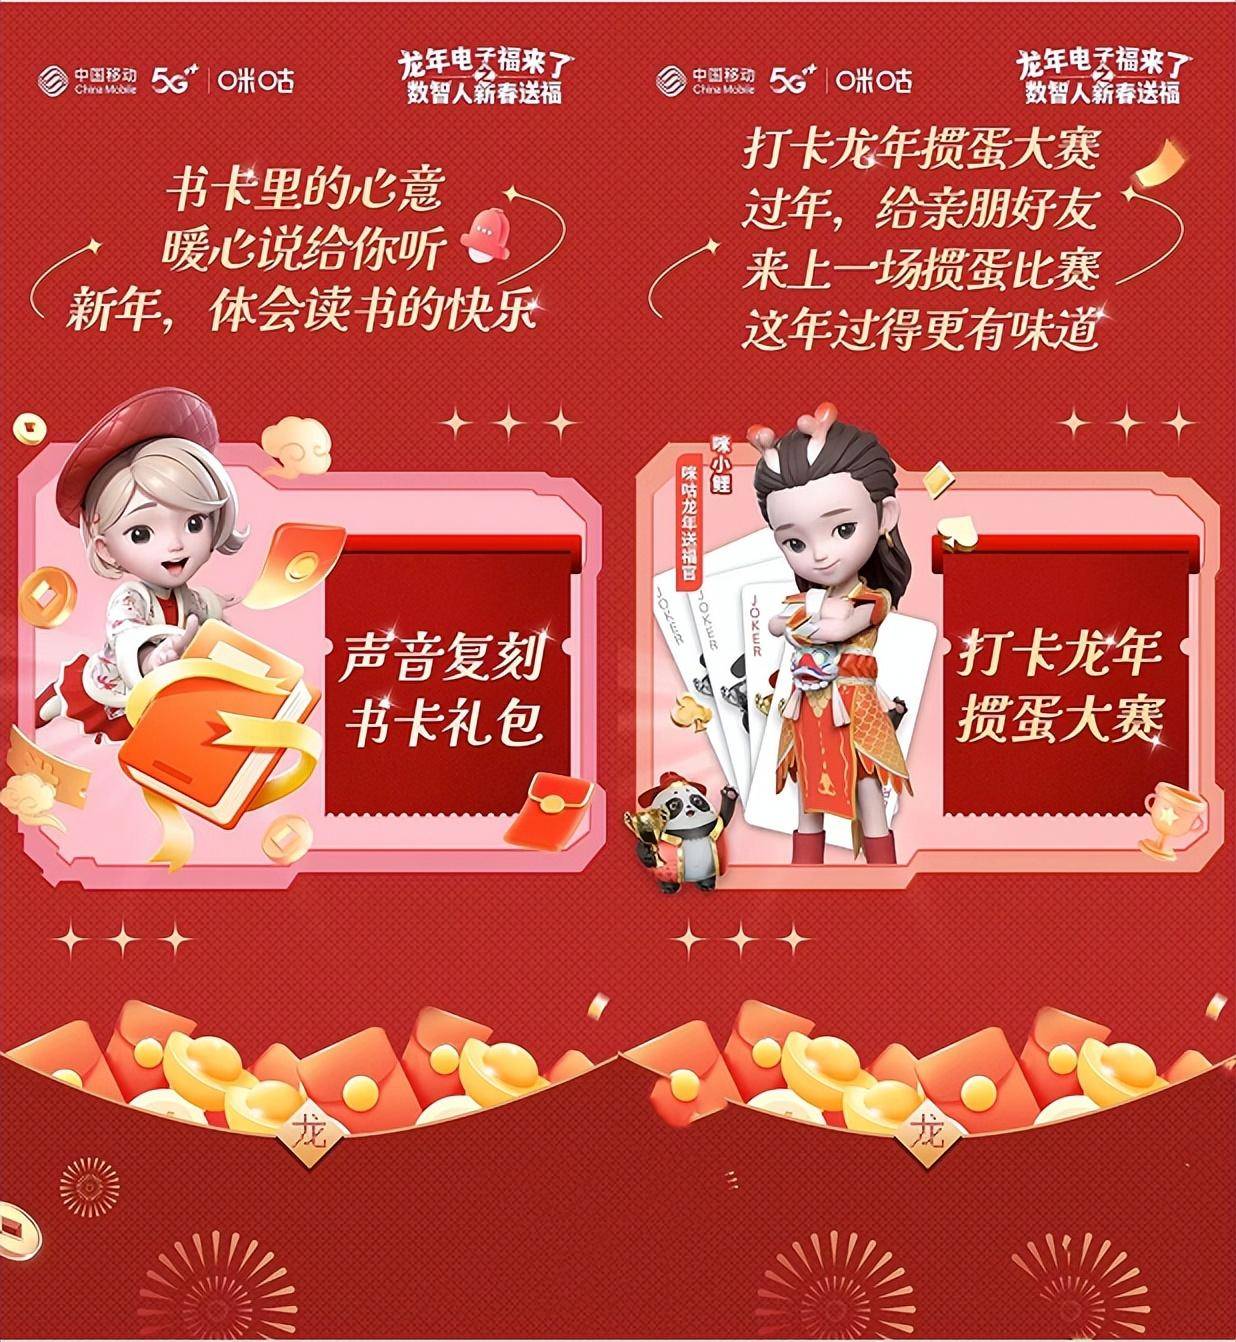 中国移动咪咕打破CNY营销“鲤鱼跃龙门”式进化(图7)